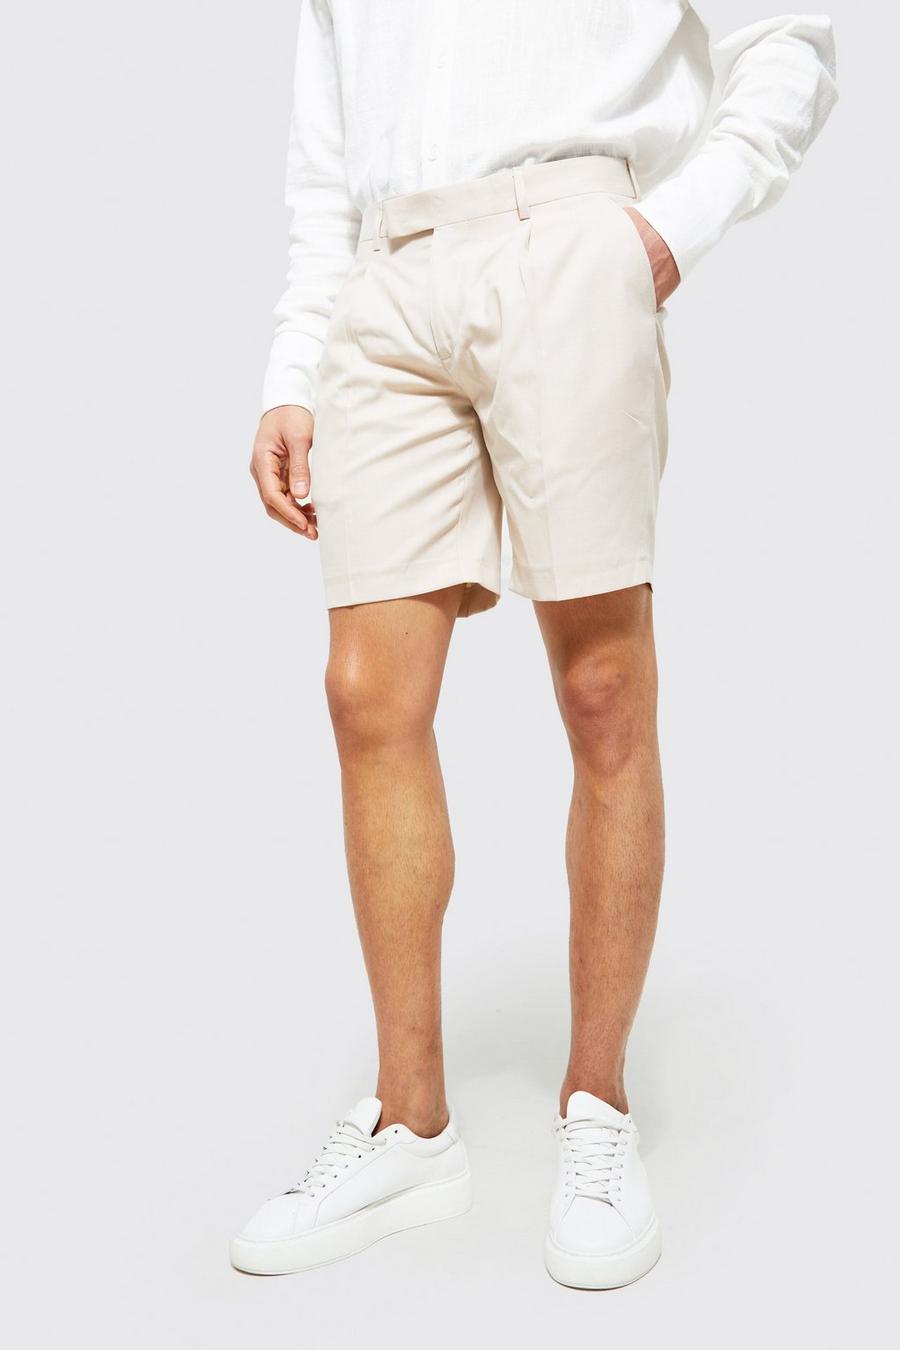 Pantalón corto ajustado entallado liso, Ecru white